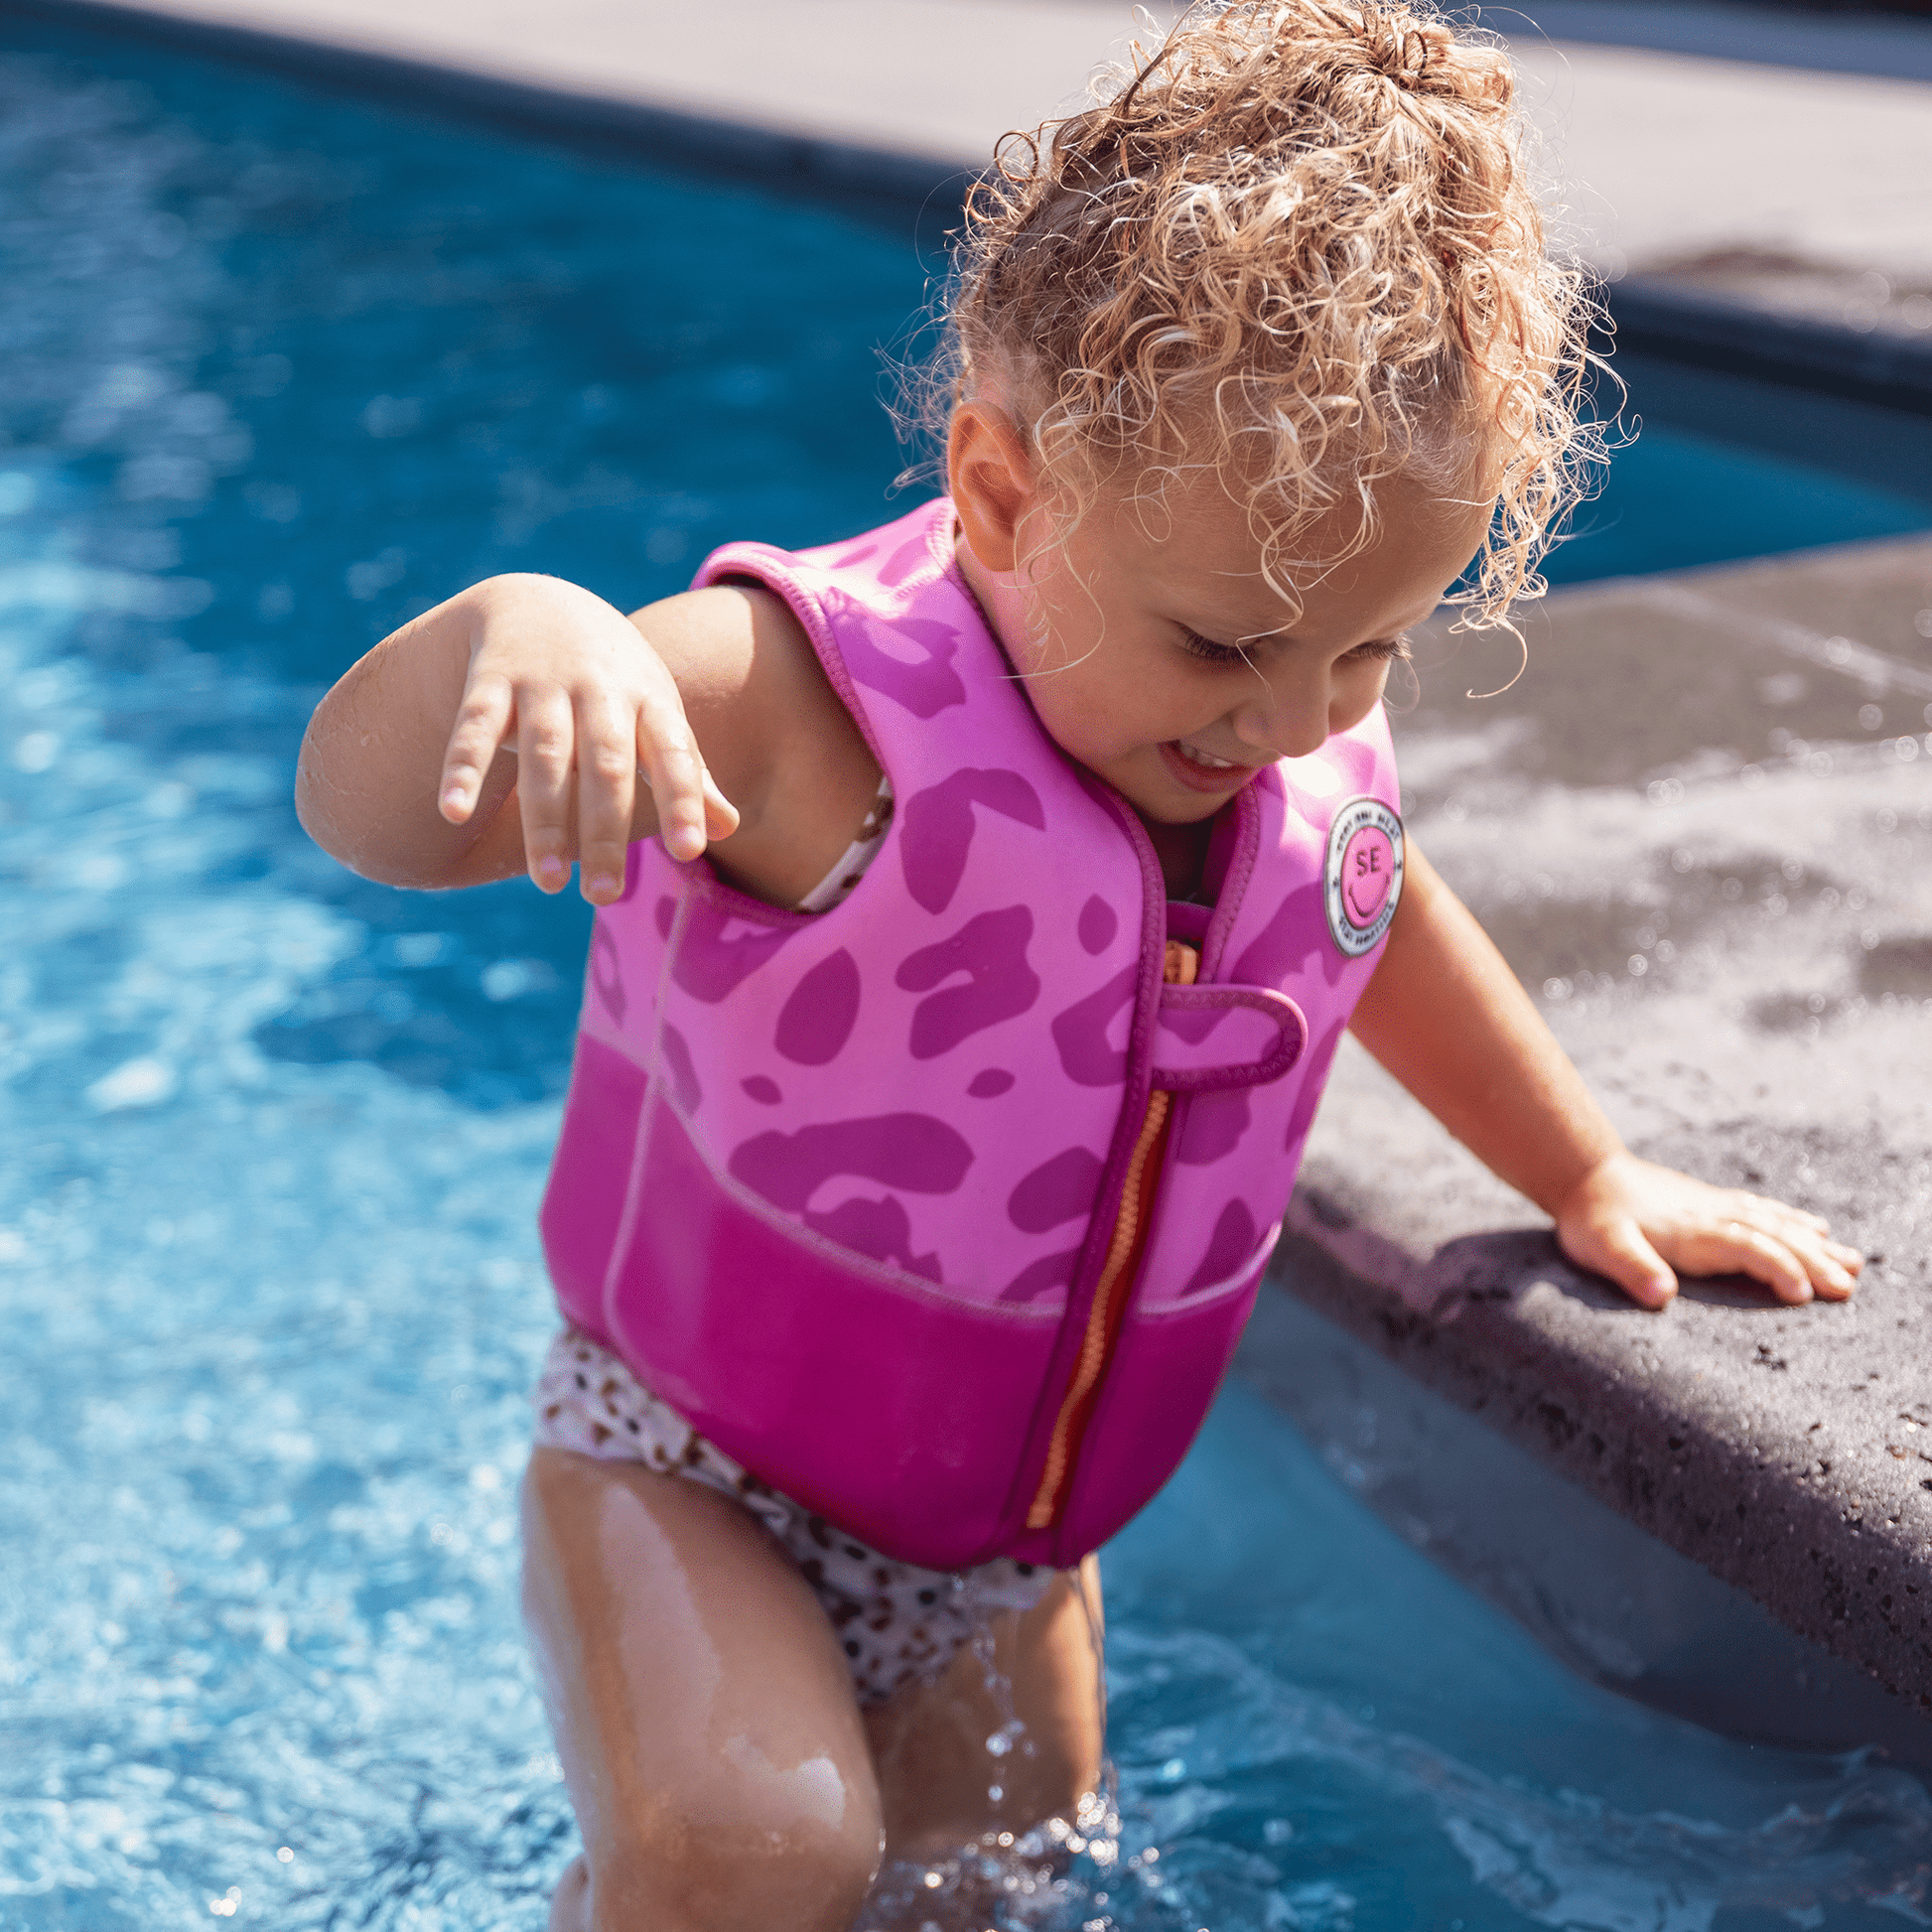 zwemvest-roze-panterprint-2-3-jaar-swim-essentials-4